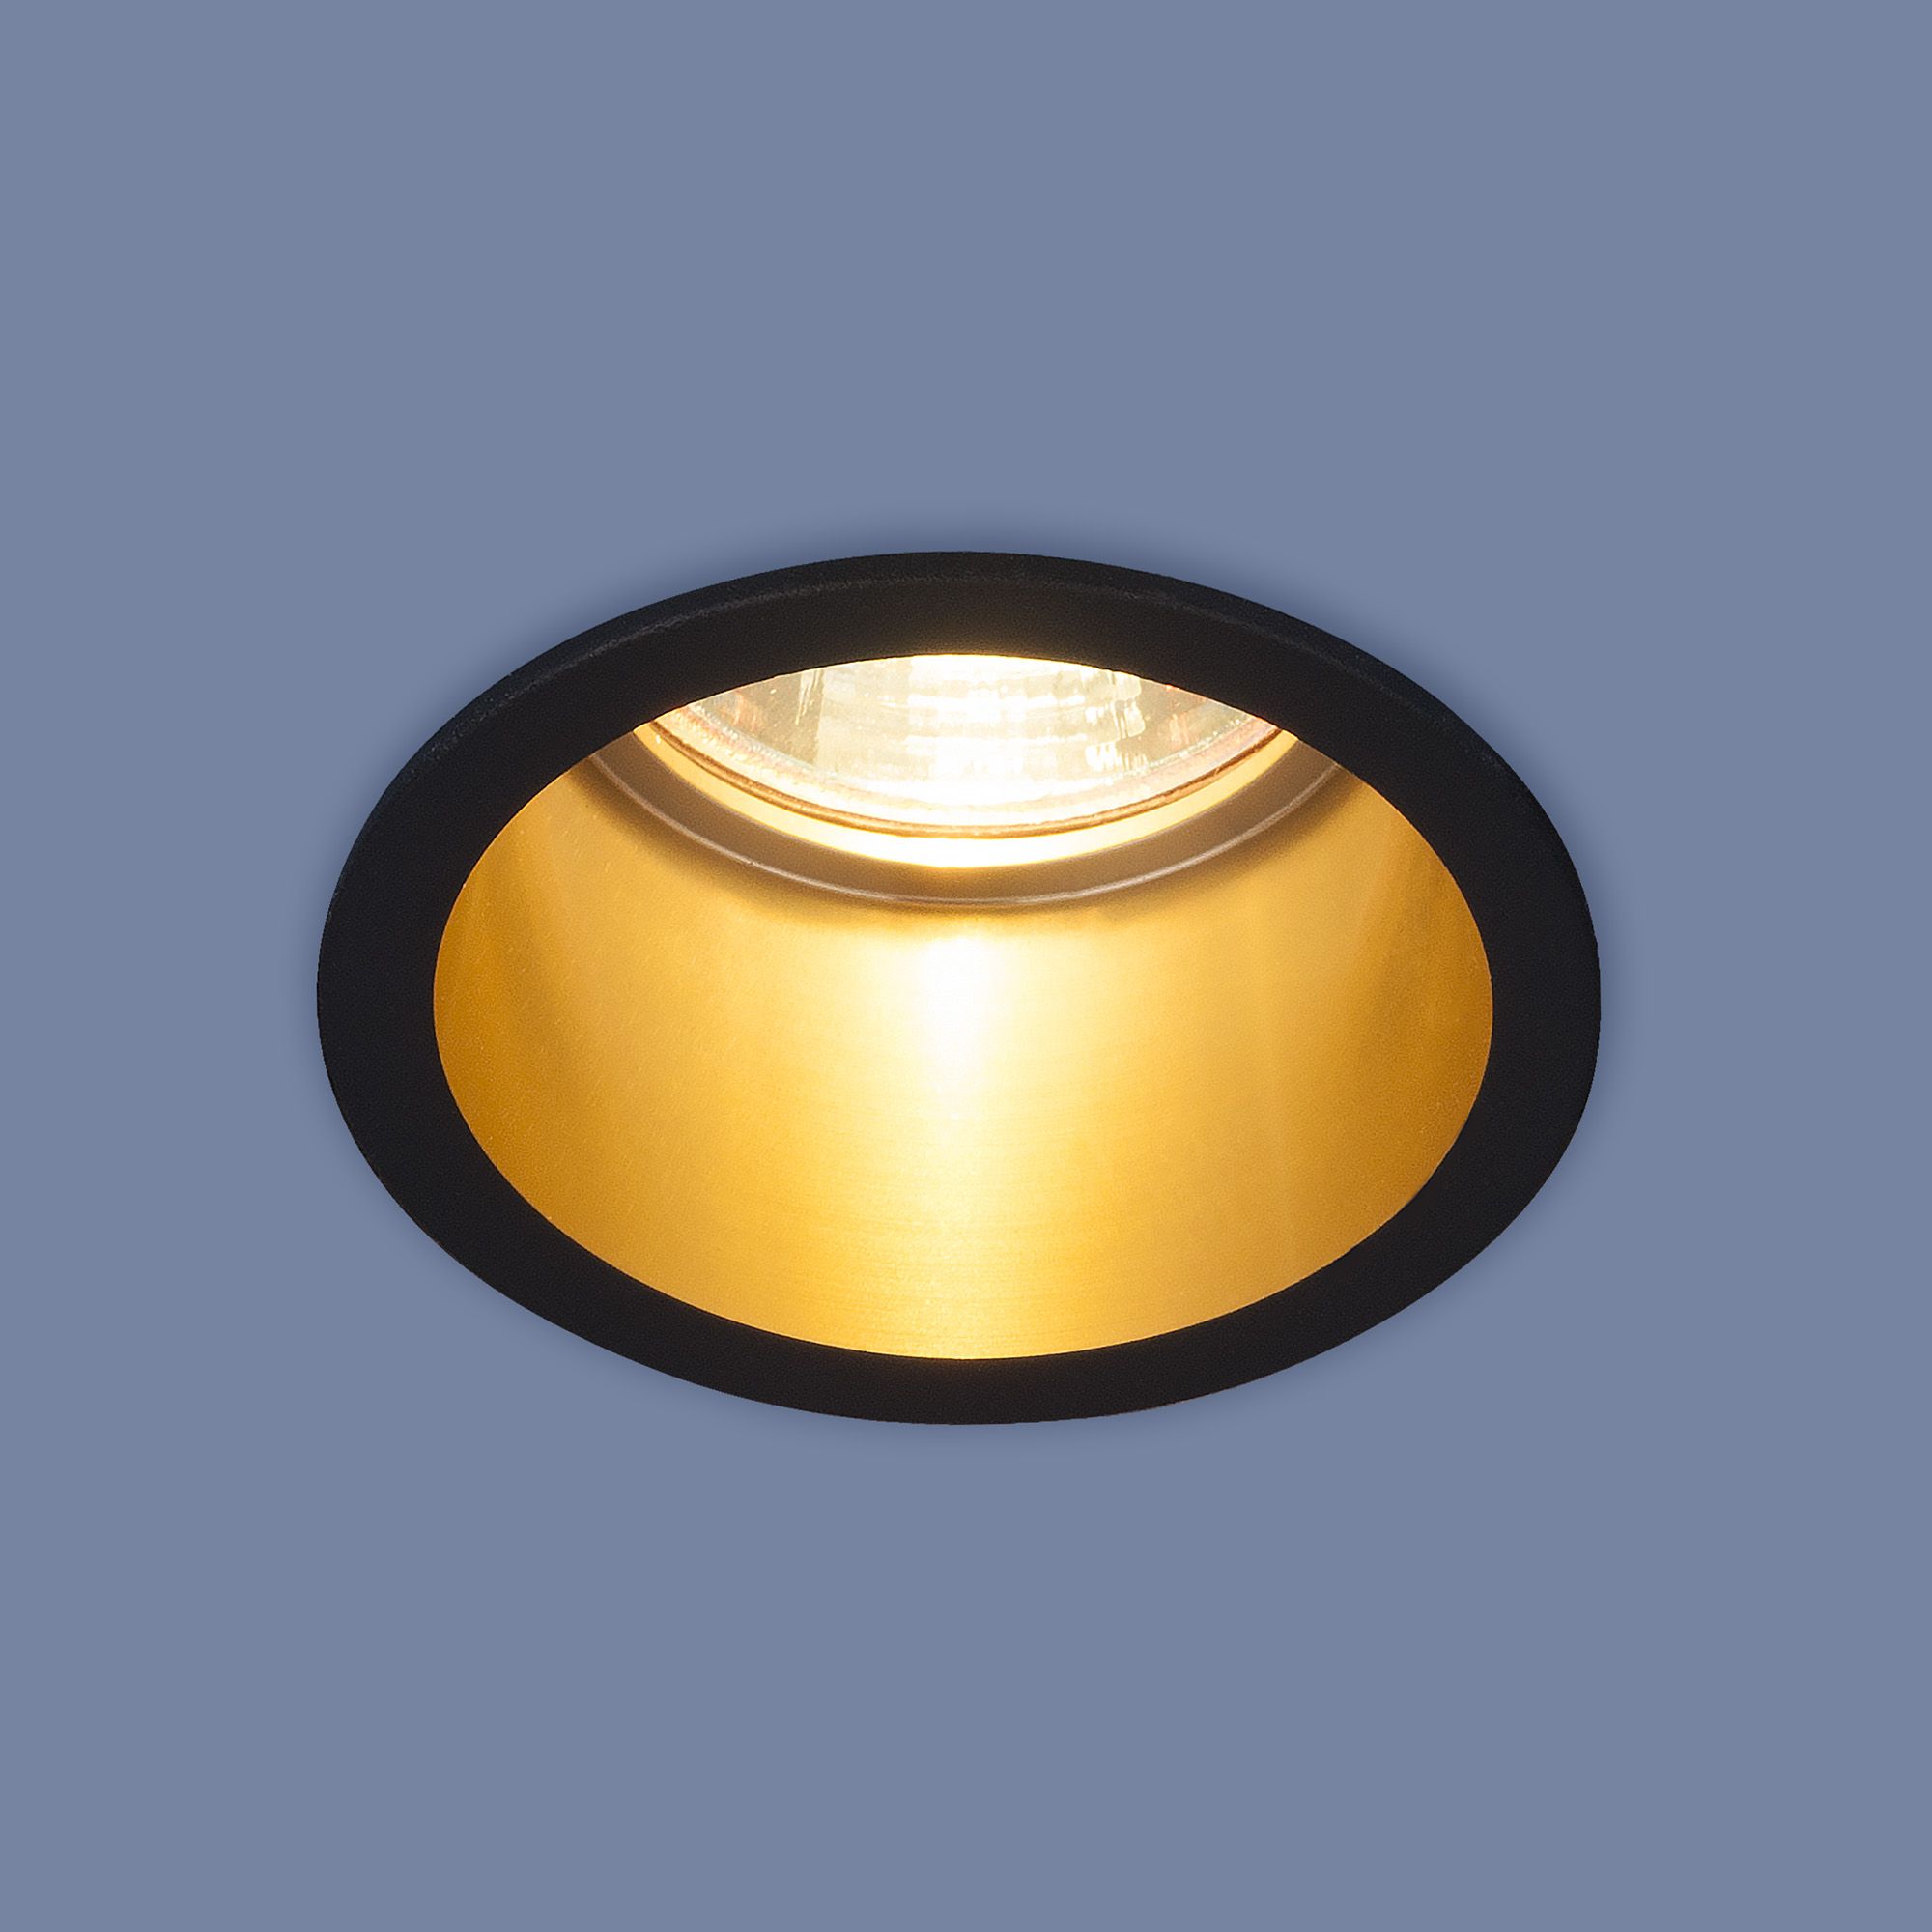 Встраиваемый точечный светильник 7004 MR16 BK/GD черный/золото. Фото 1